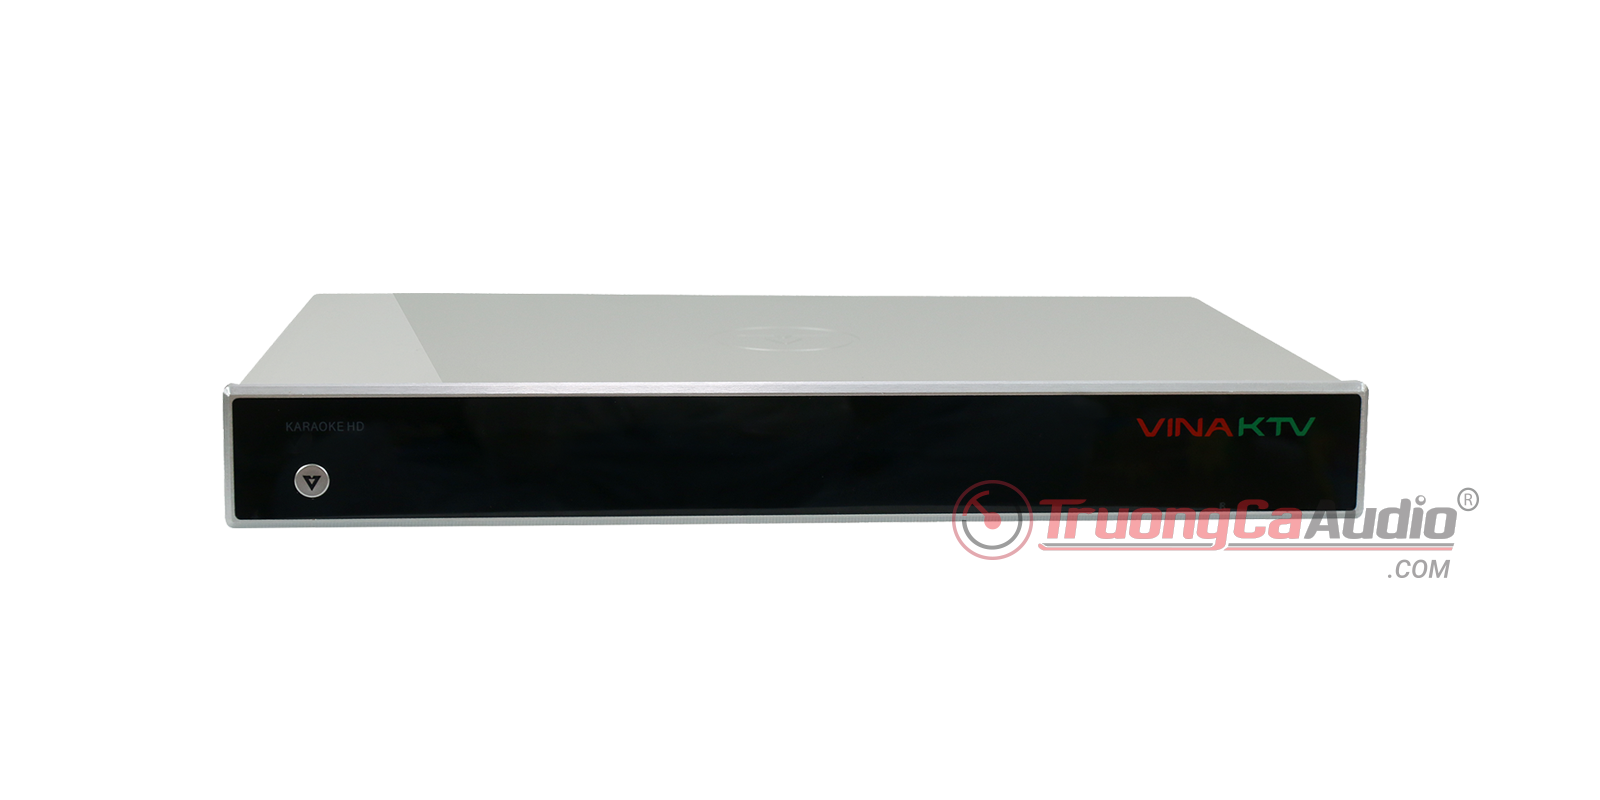 Đầu VOD V6++ là dòng đầu karaoke cao cấp hàng đầu hiện nay, đầu VOD V6++ dành cho dàn karaoke gia đình và kinh doanh